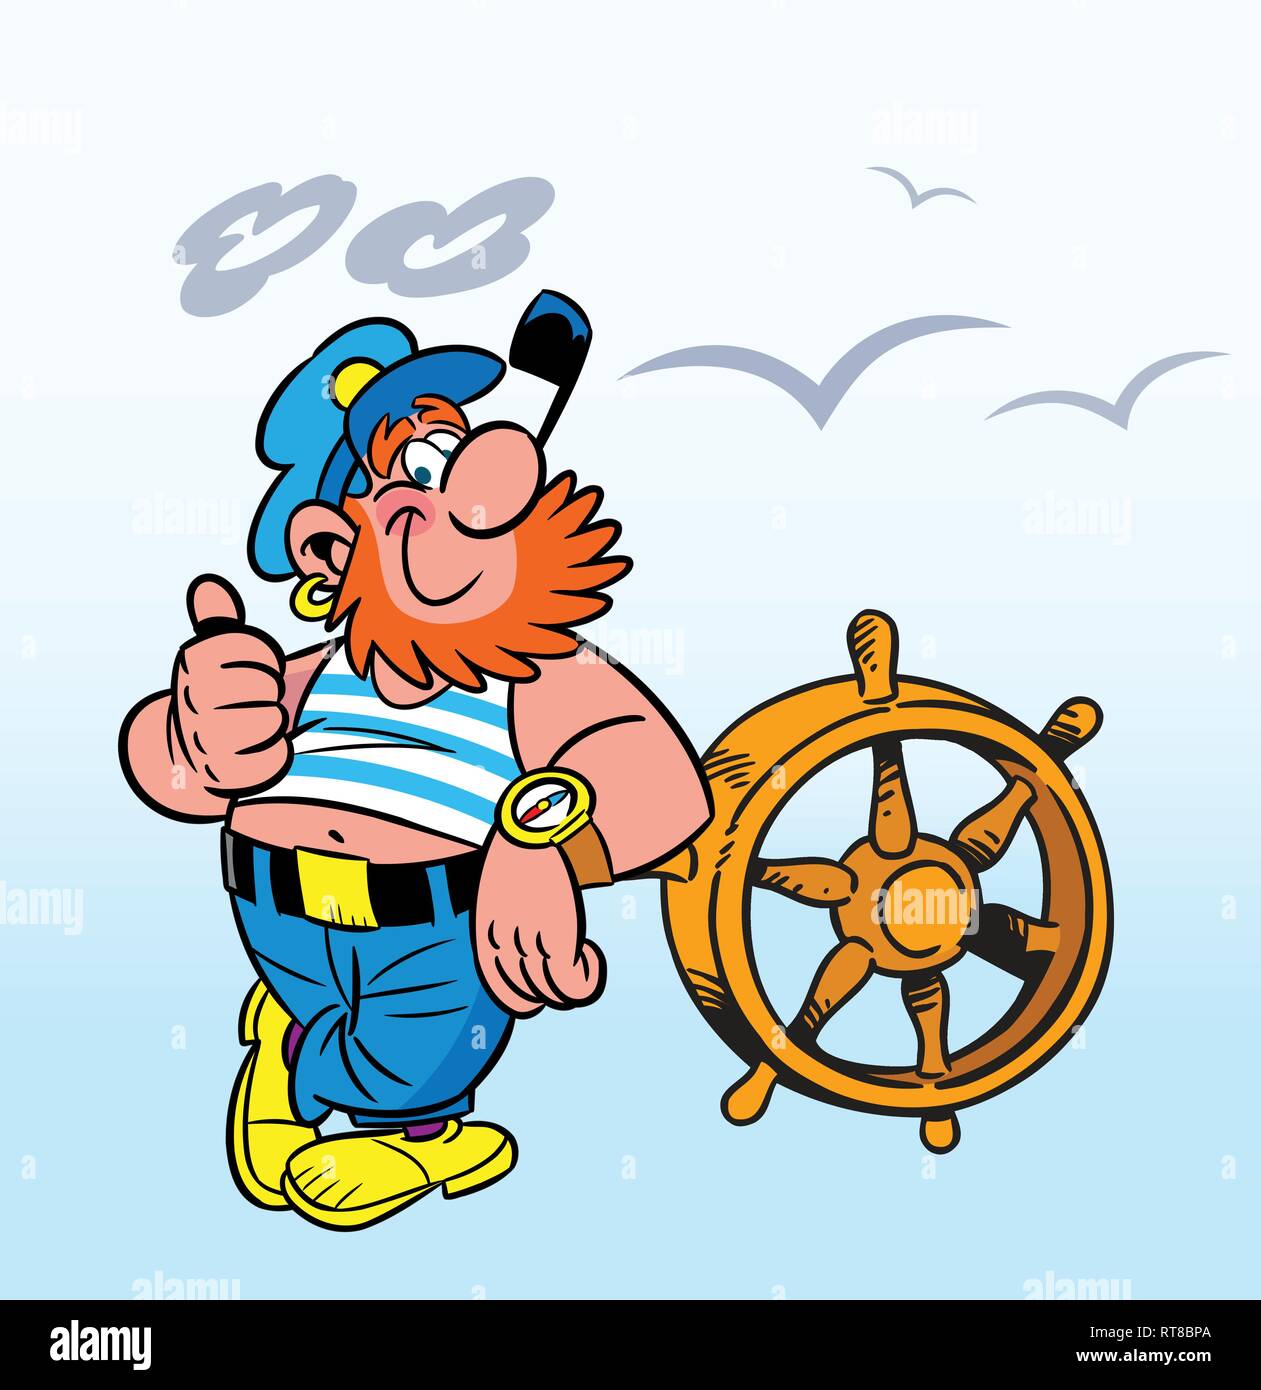 En illustration, un dessin animé avec le capitaine d'un tuyau se tient à la barre du navire. Isolé sur fond blanc. Illustration de Vecteur